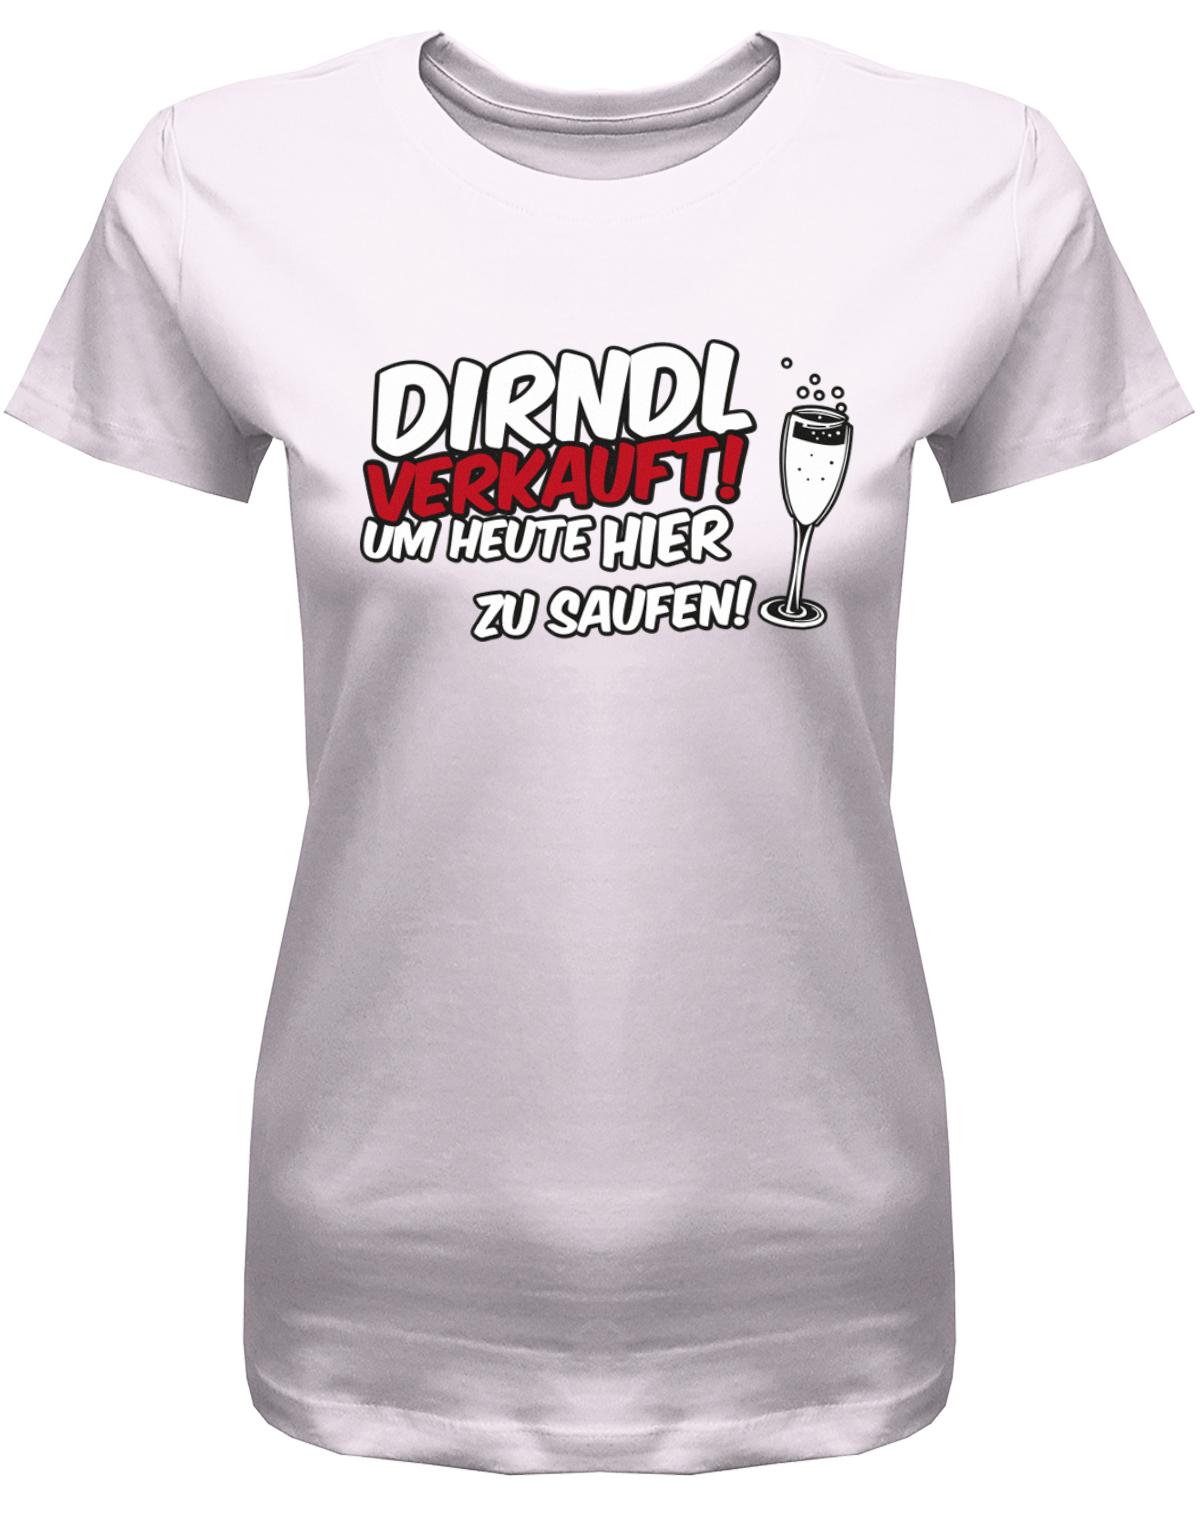 Dirndl-verkauft-um-heute-hier-zu-saufen-Damen-Shirt-Rosa